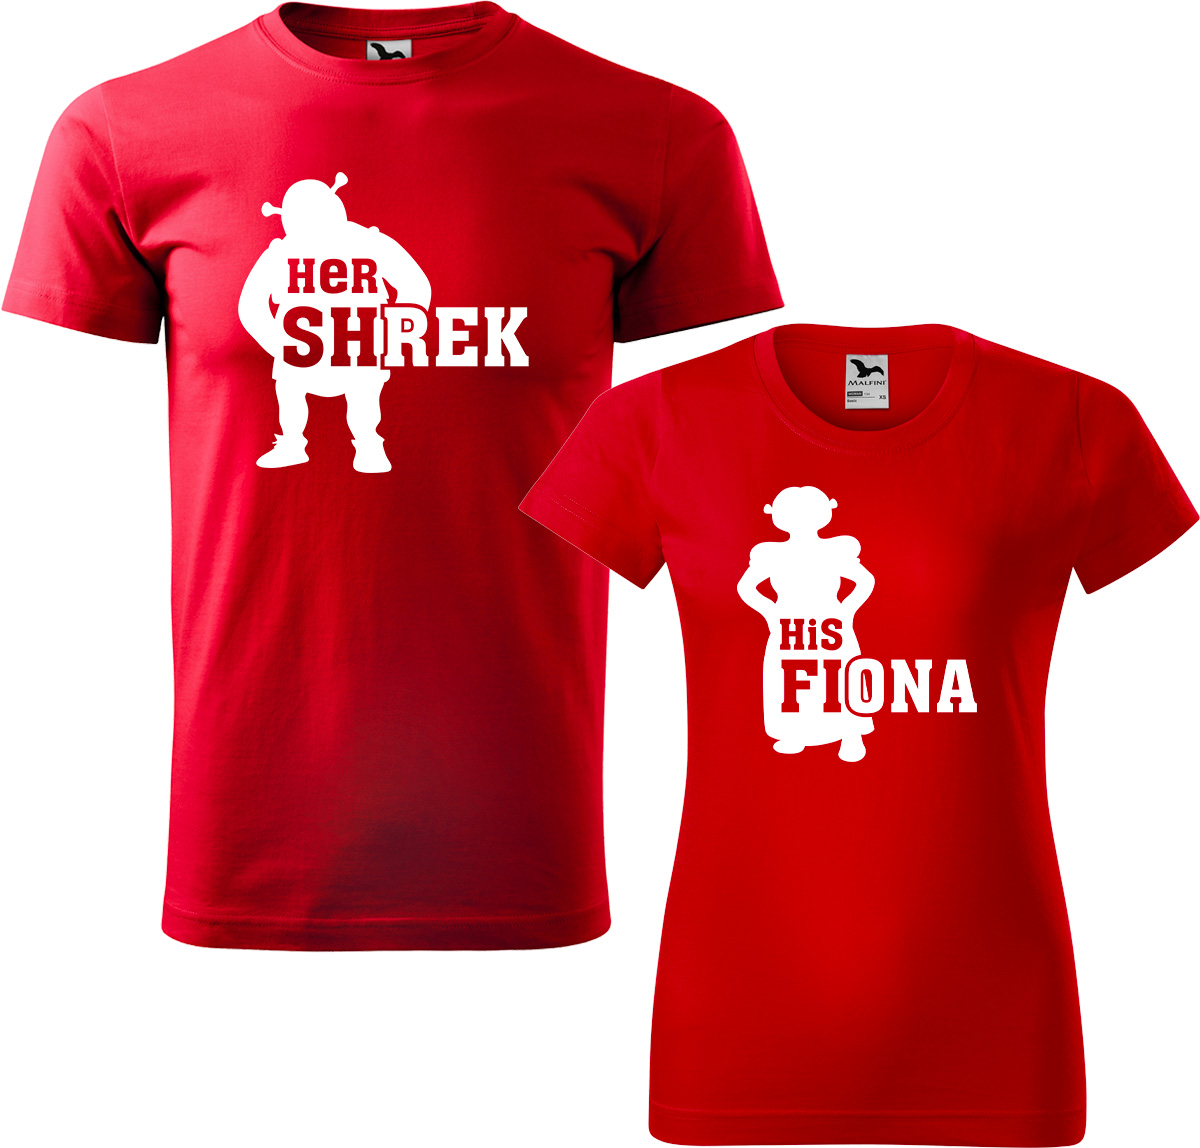 Trička pro páry - Shrek a Fiona (SLEVA) Barva: Červená (07), Velikost dámské tričko: L, Velikost pánské tričko: M